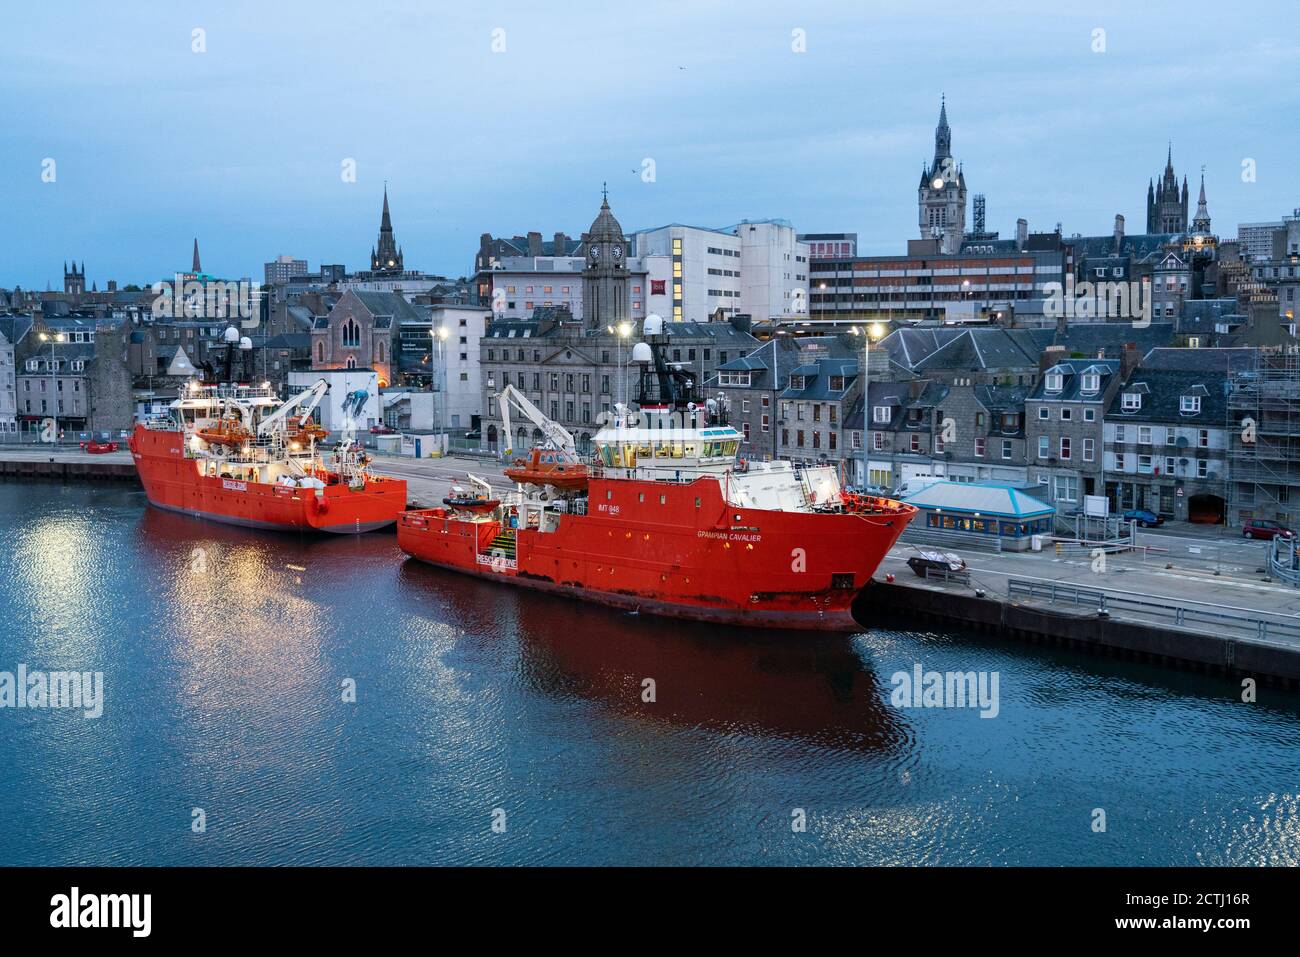 Vue en début de matinée du port d'Aberdeen avec des navires de soutien offshore de l'industrie pétrolière de la mer du Nord amarrés, Aberdeenshire, Écosse, Royaume-Uni Banque D'Images